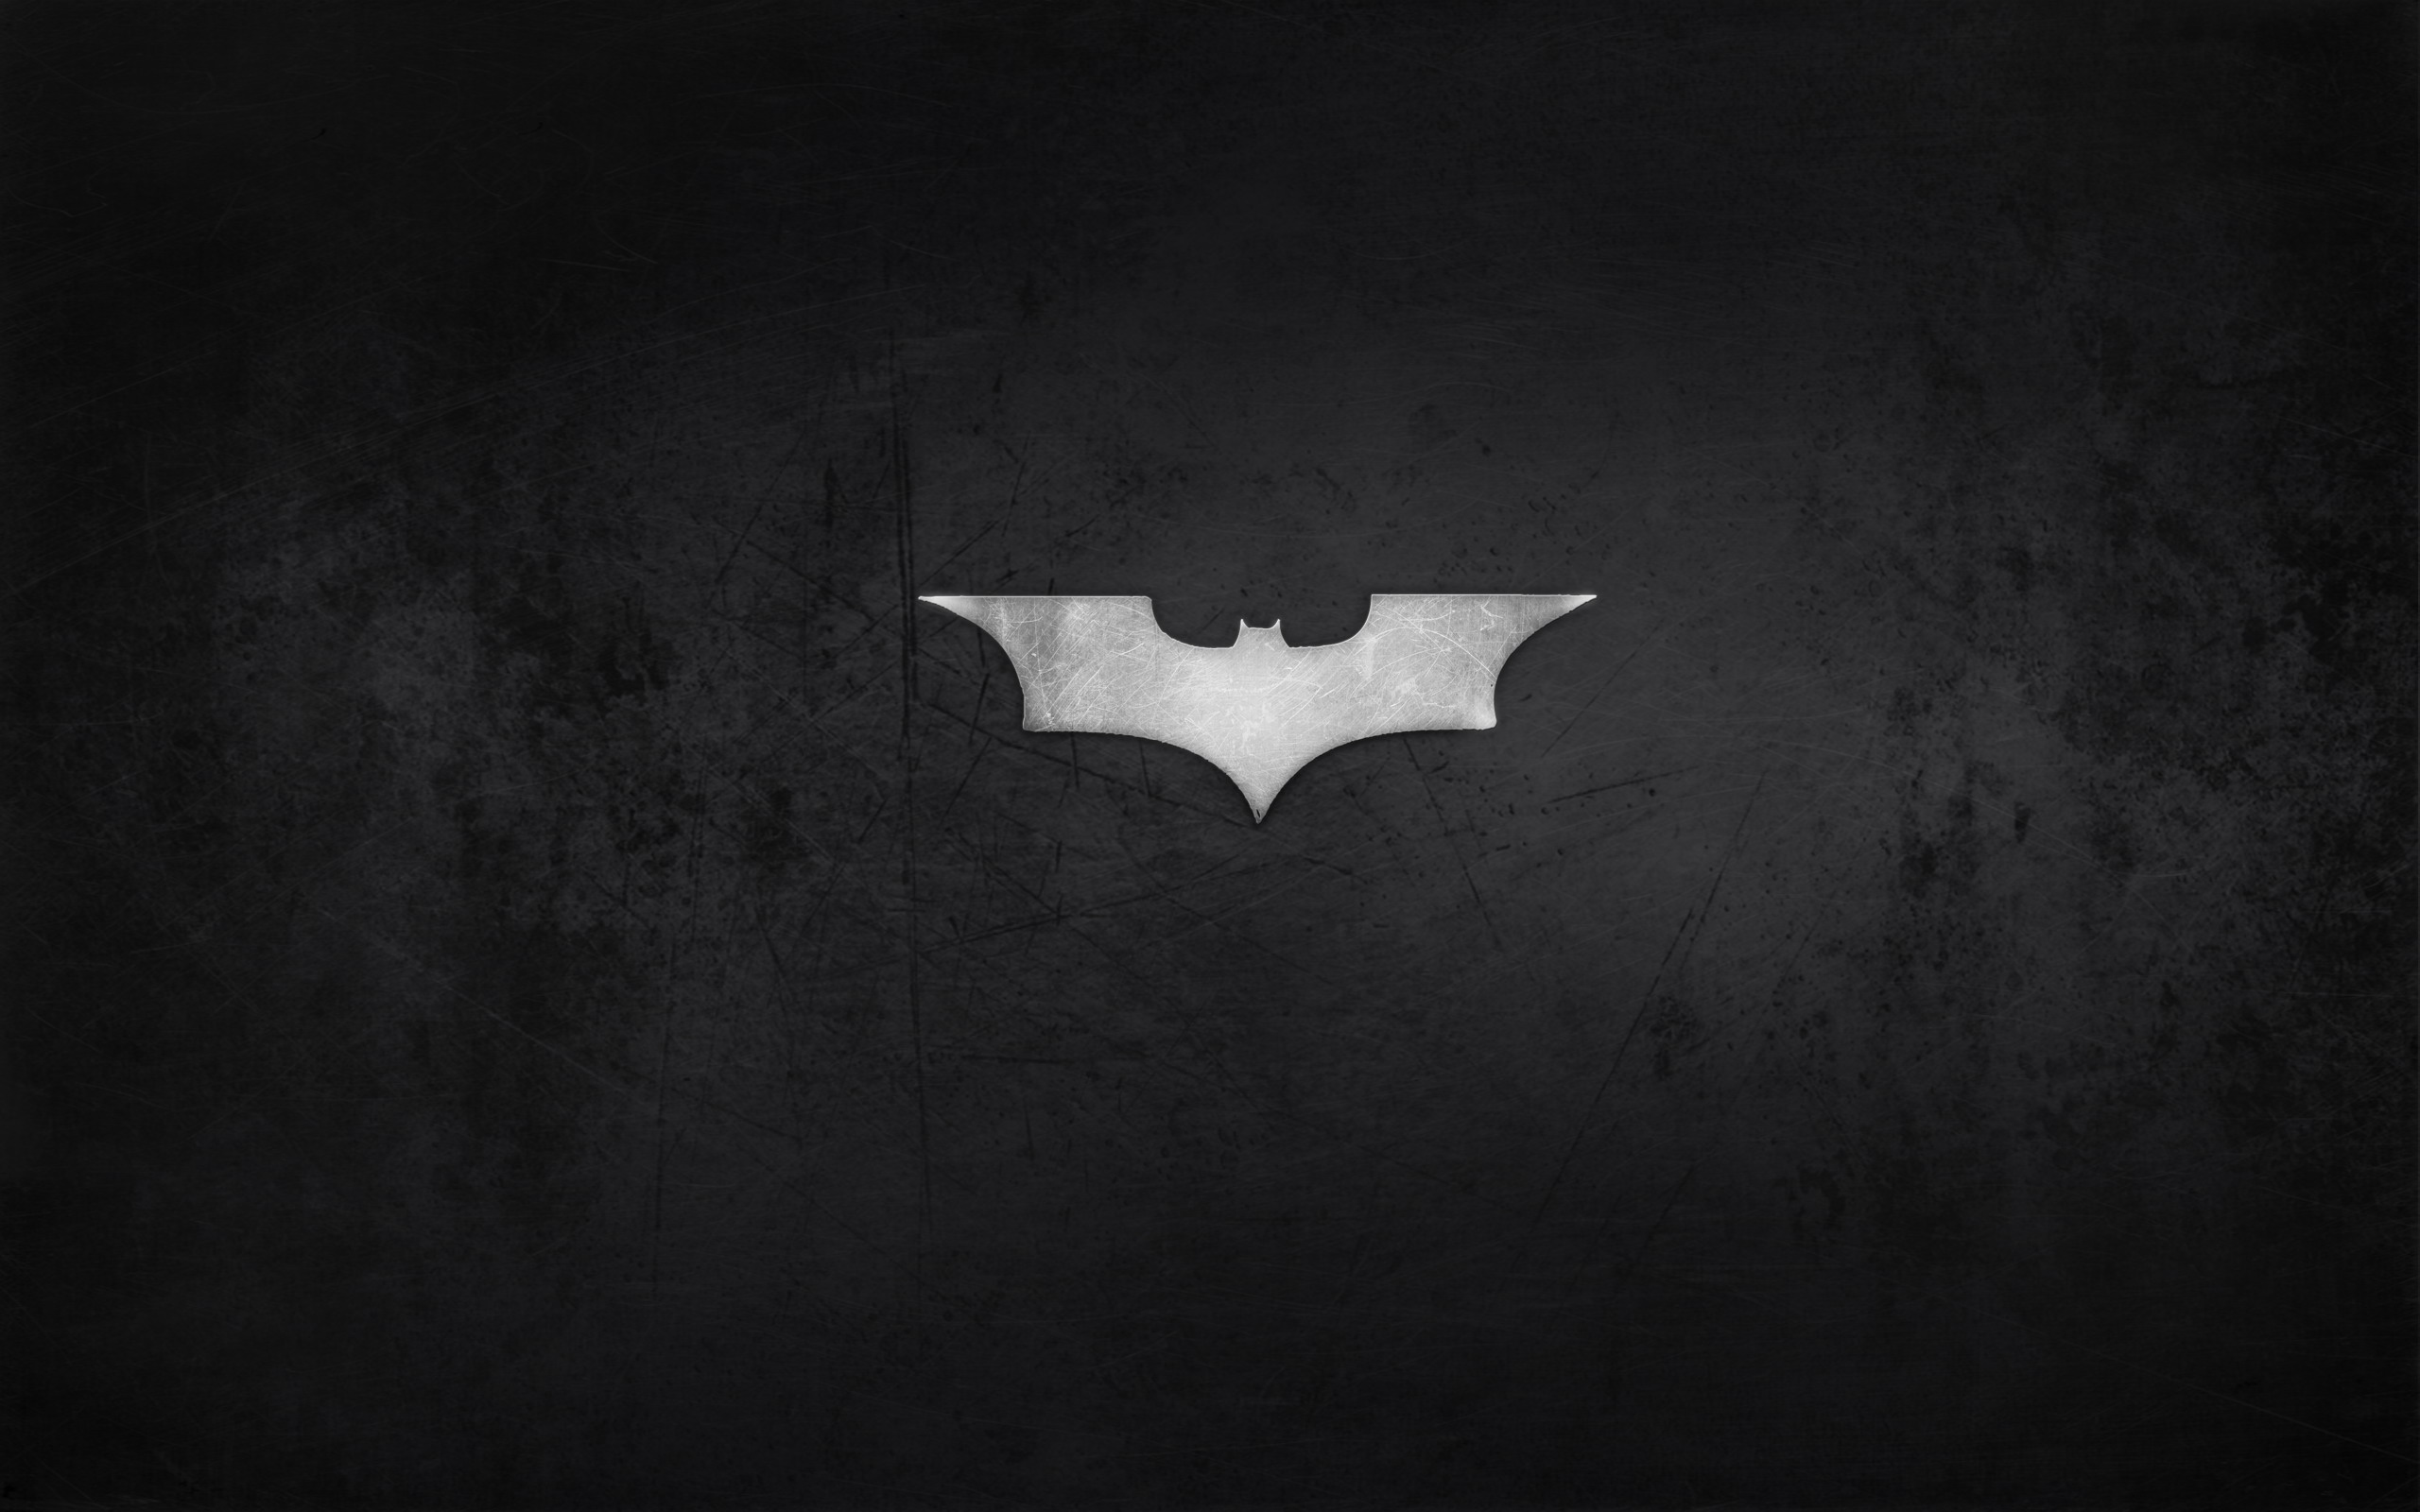 壁纸2560x1600蝙蝠侠 宽屏 桌酷精选一图 壁纸5壁纸 蝙蝠侠（宽屏）精壁纸 蝙蝠侠（宽屏）精图片 蝙蝠侠（宽屏）精素材 精选壁纸 精选图库 精选图片素材桌面壁纸